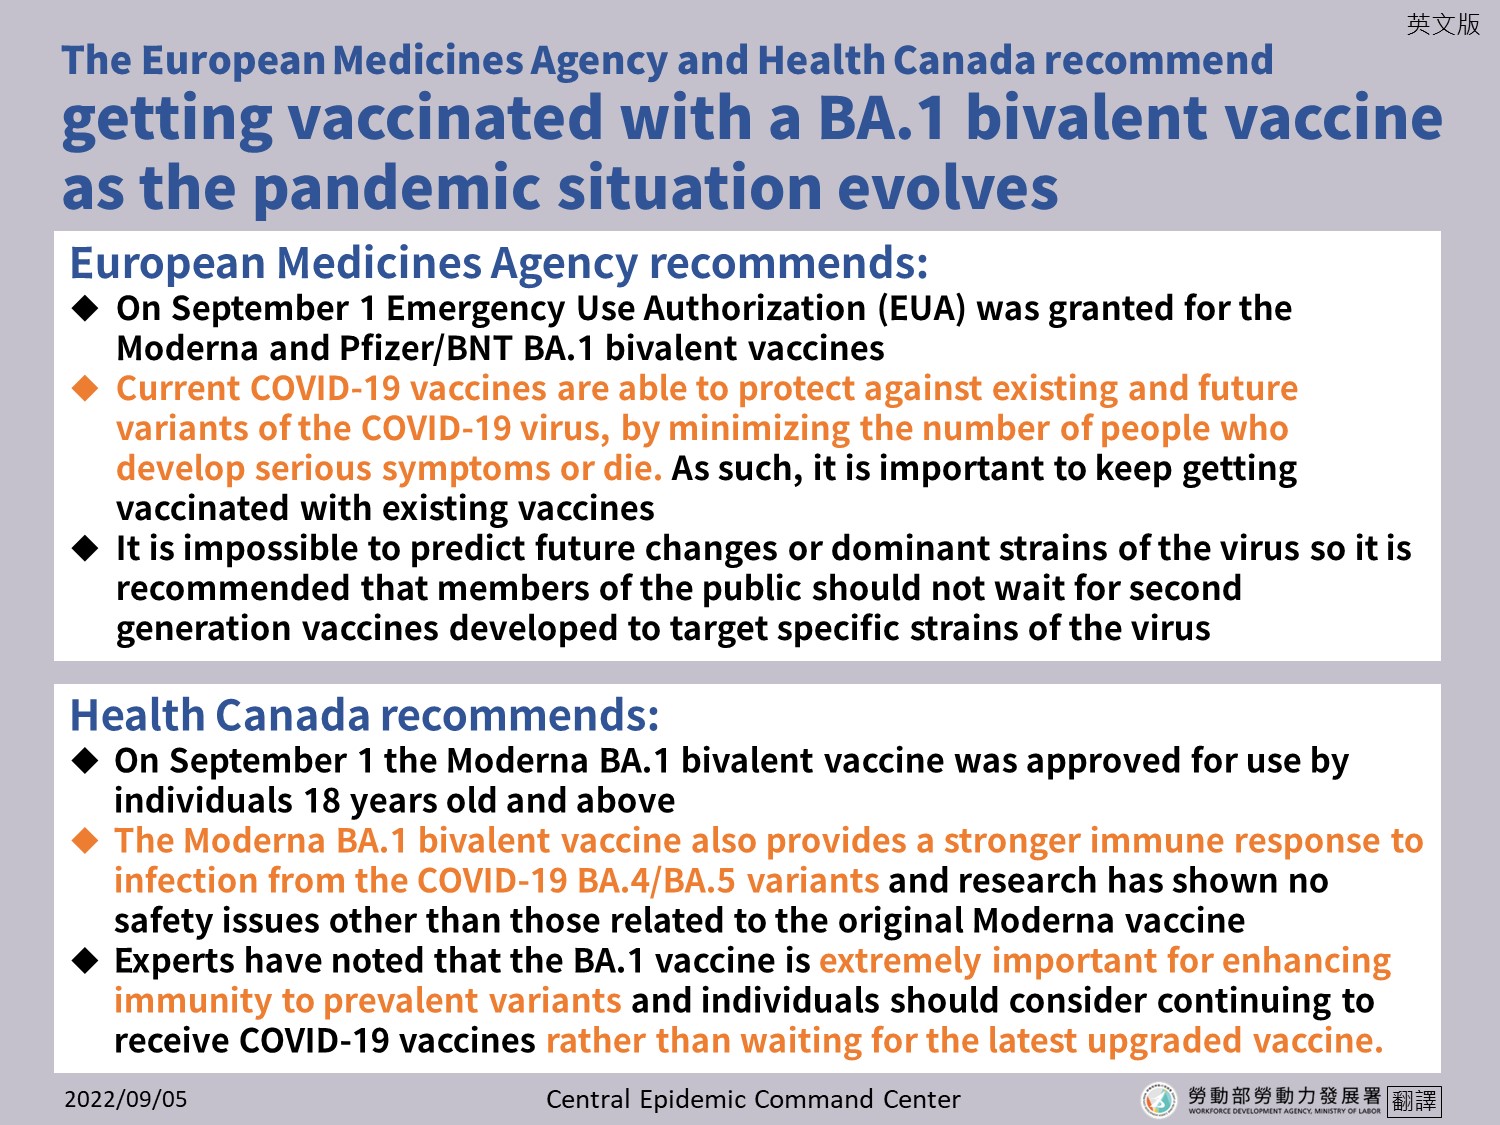 歐洲藥品管理局及加拿大衛生部均建議接種BA.1雙價疫苗因應疫情變化-英